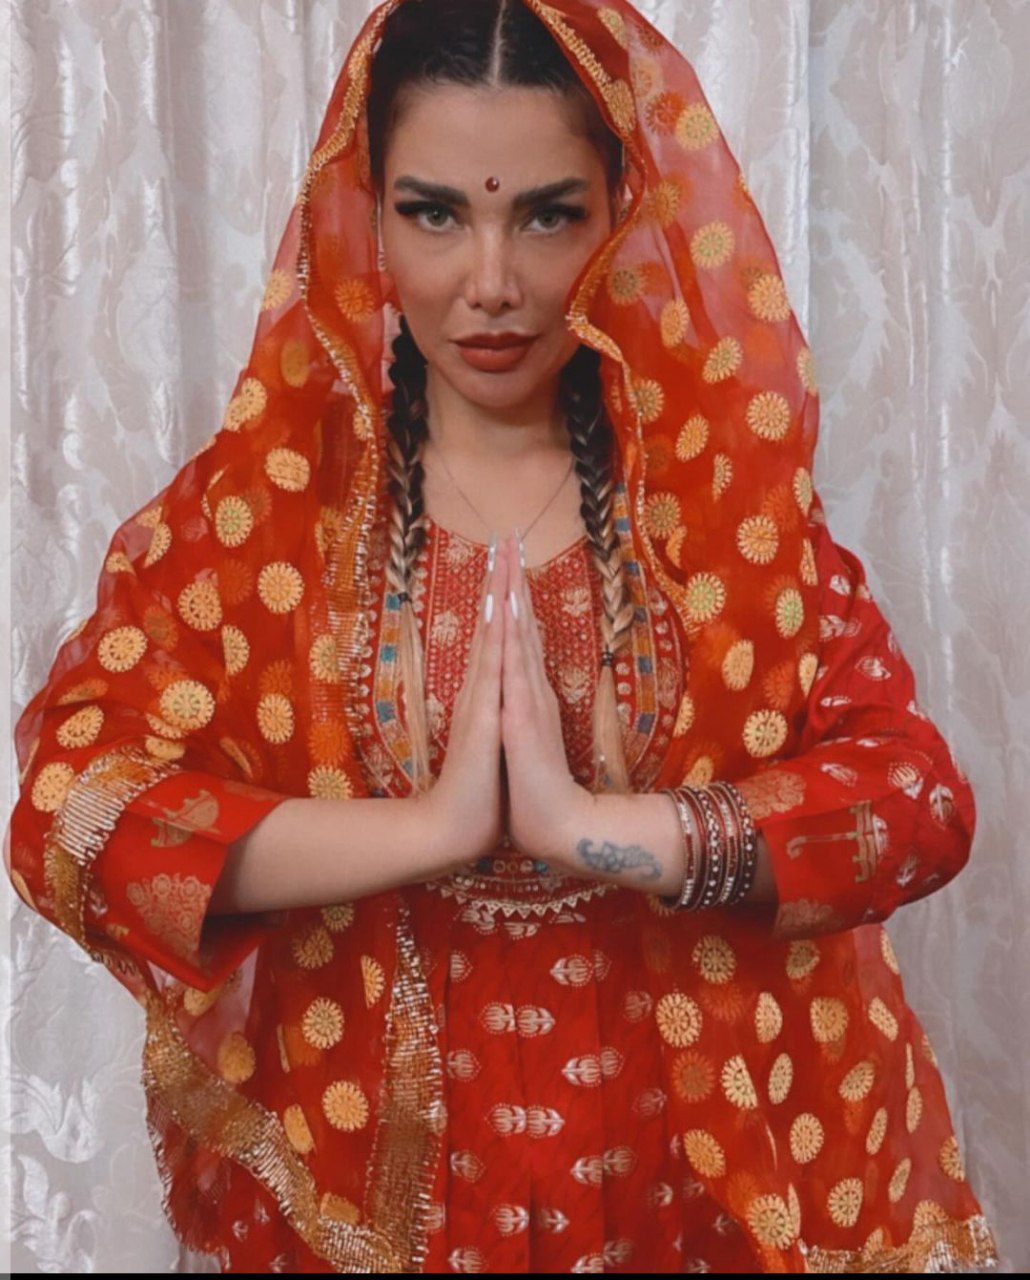 همسر مهران غفوریان با لباس هندی سوژه شد / ظاهر عجیب خانم بلاگر + عکس